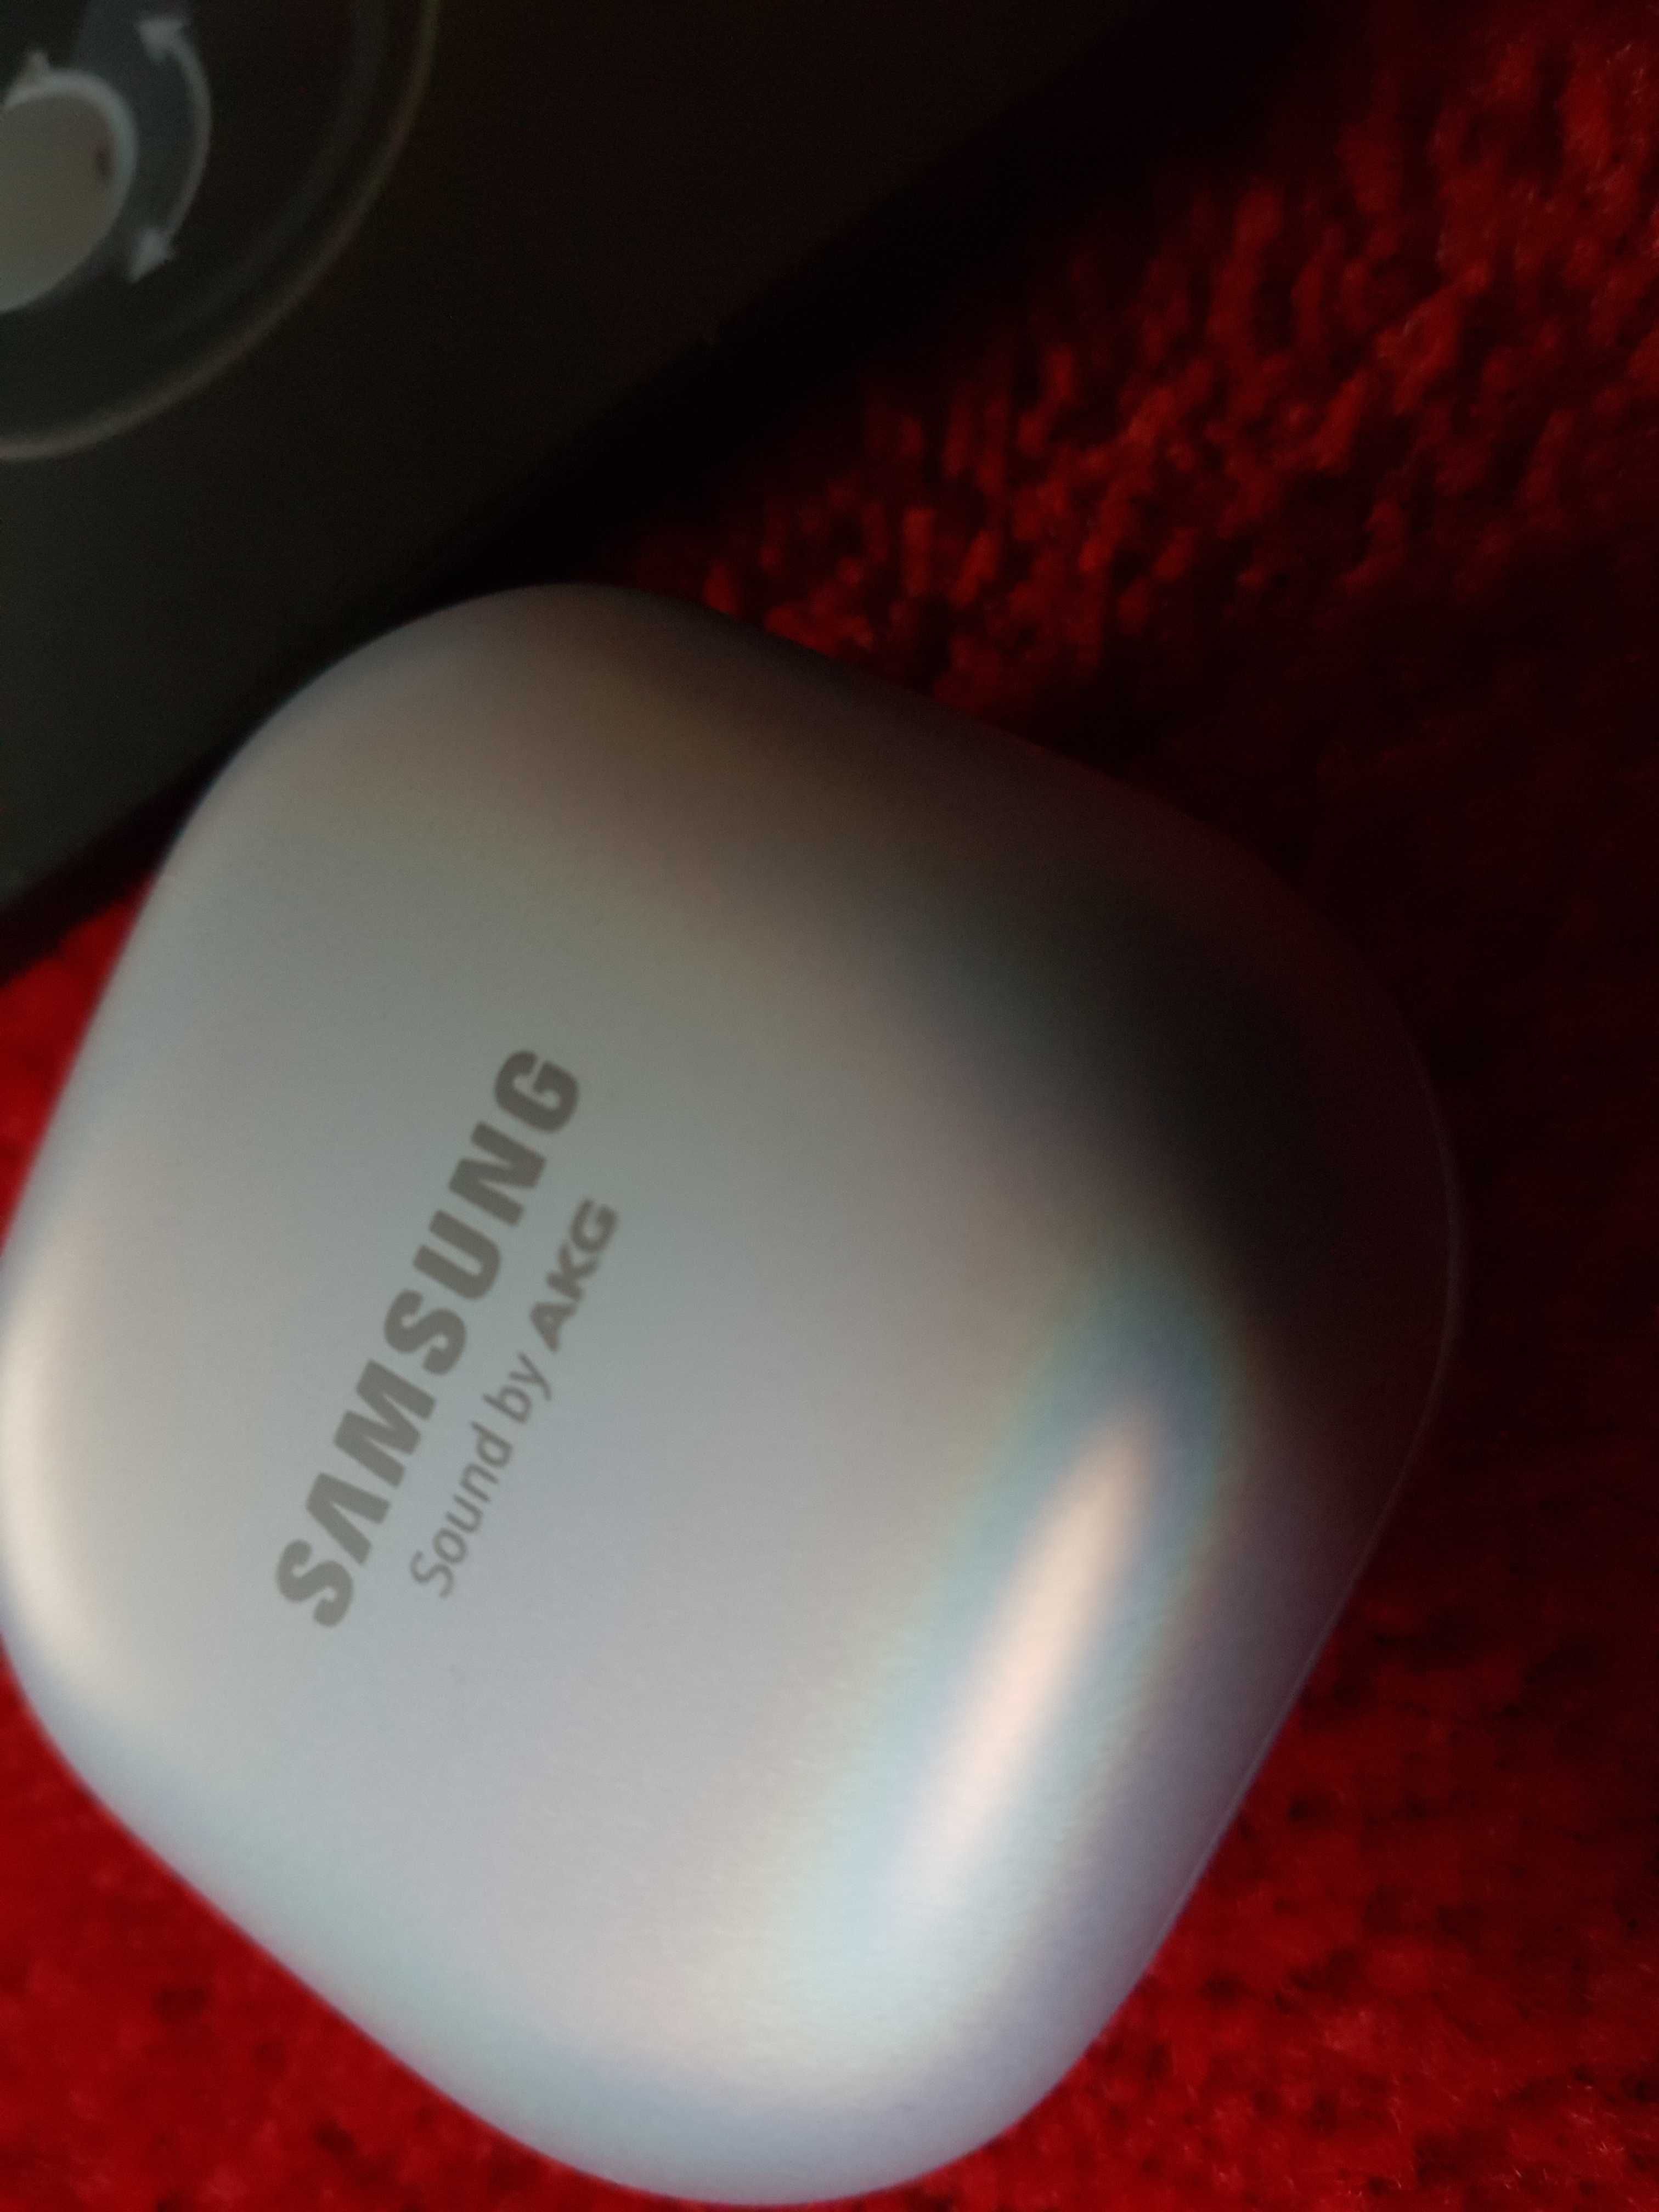 Samsung Galaxy Buds Pro + dowód zakupu - st. idealny